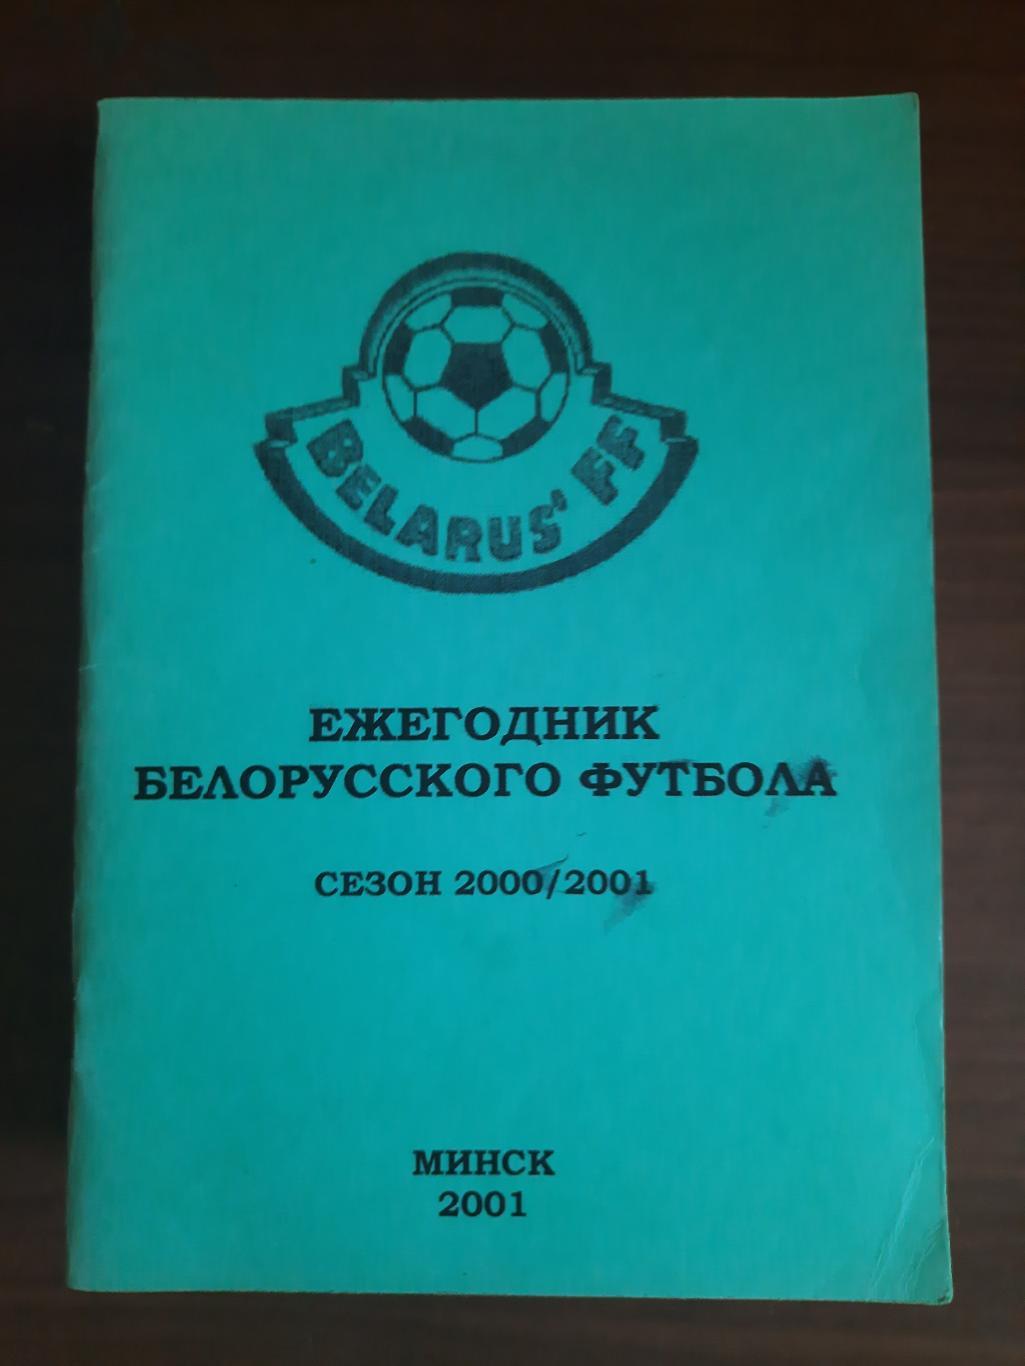 Ежегодник белорусского футбола. Сезон 2000 - 20001